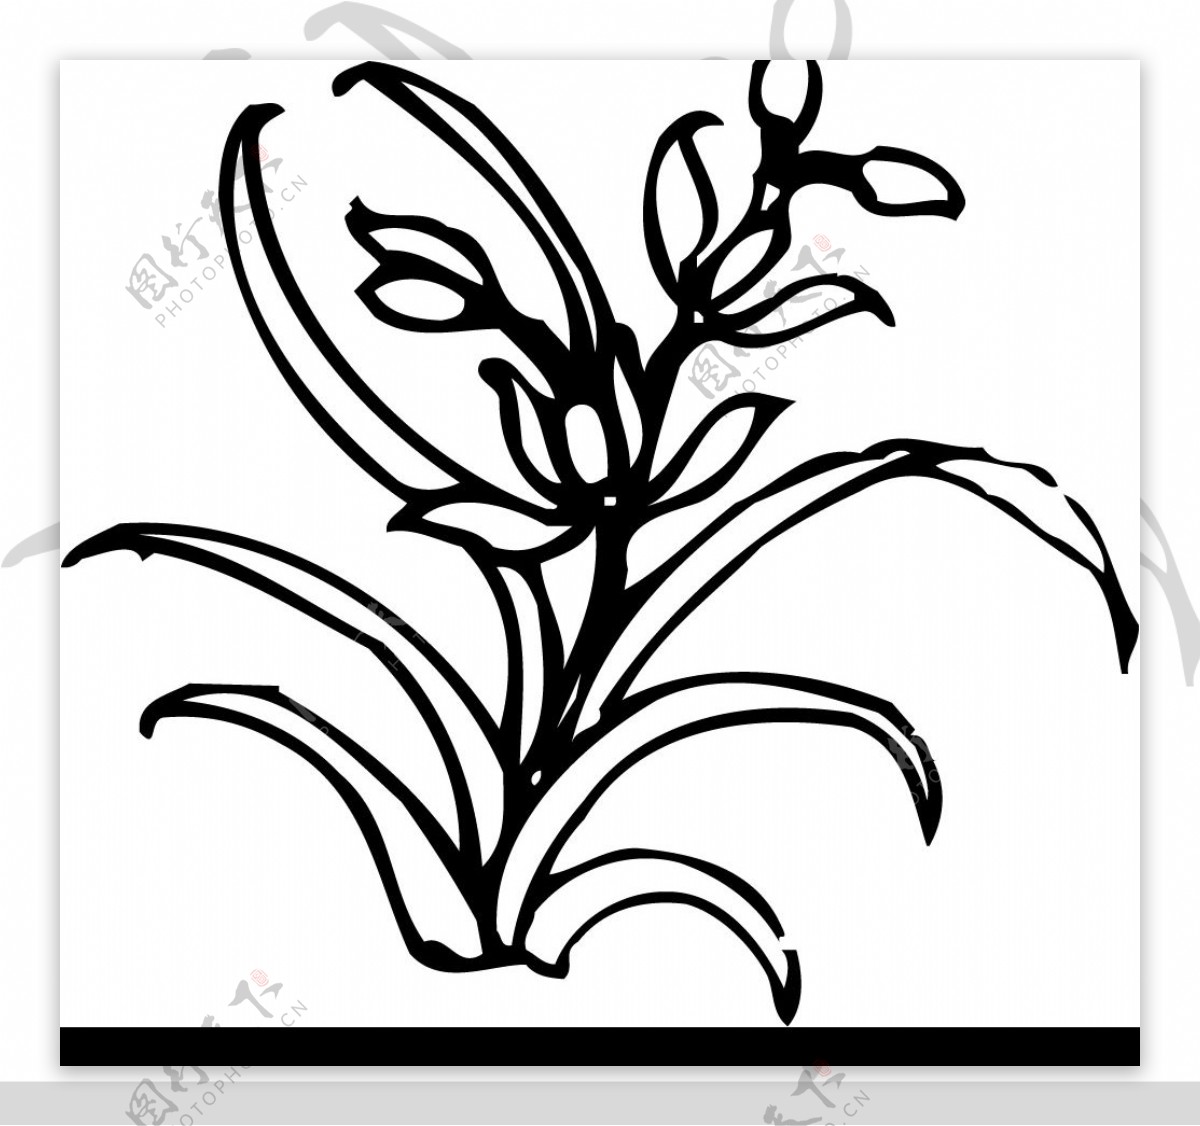 黄角兰的养殖方法和注意事项 - 花晓网